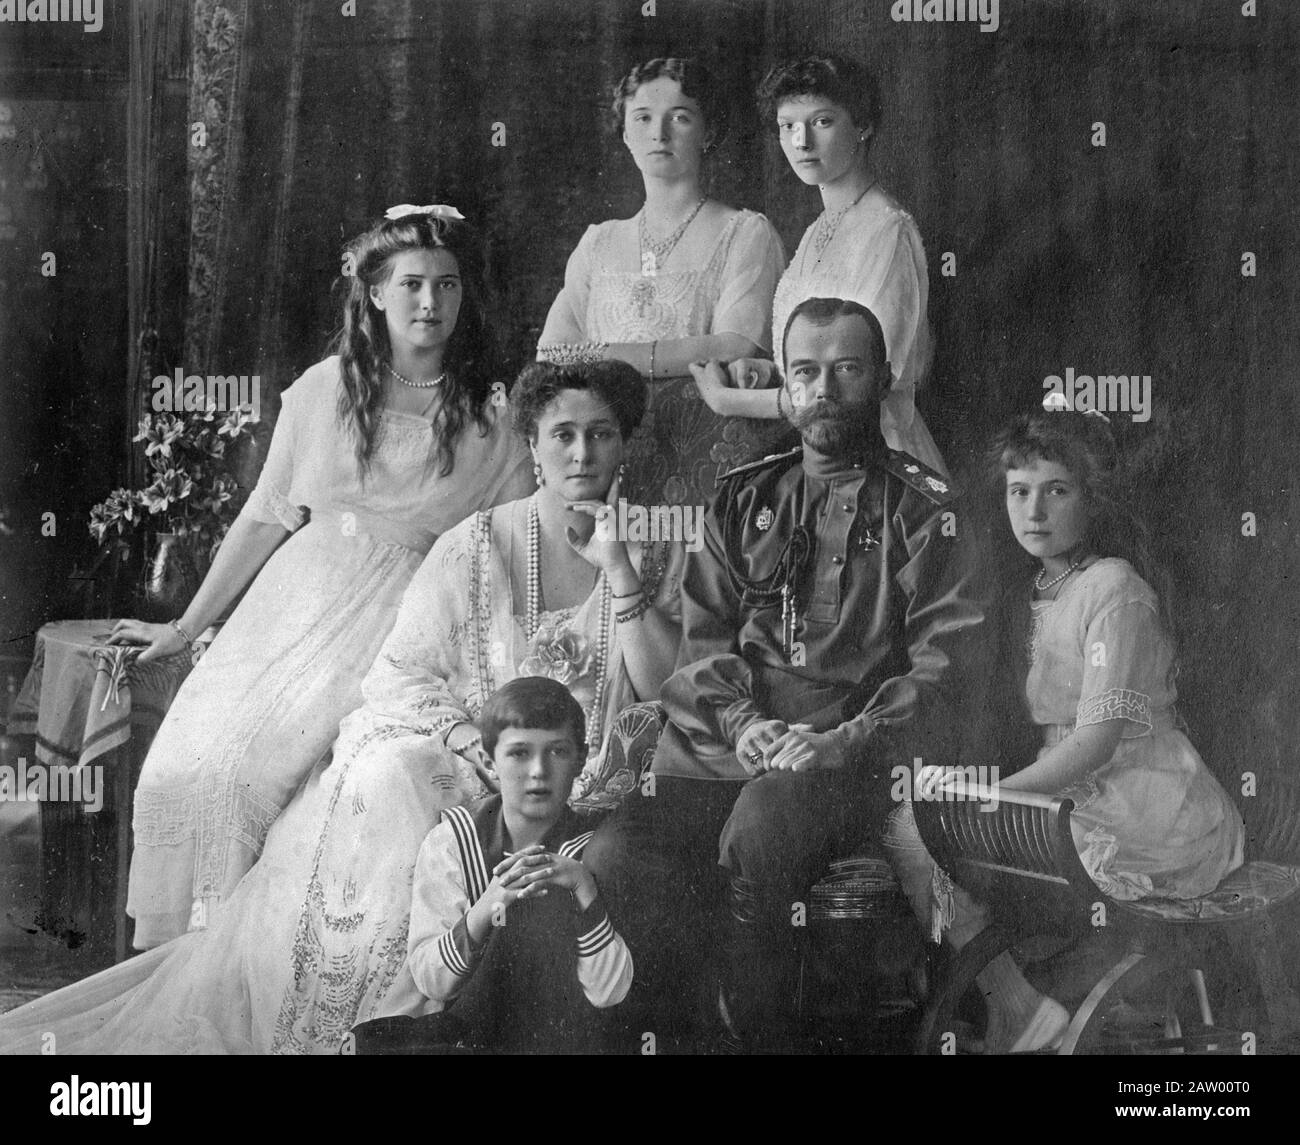 Famille royale russe [1914] - Les Romanofs, la dernière famille royale de Russie, y compris: Assis (de gauche à droite) Marie, la Reine Alexandra, le tsar Nicholas II, Anastasia, Alexei (devant), debout (de gauche à droite), Olga et Tatiana Banque D'Images